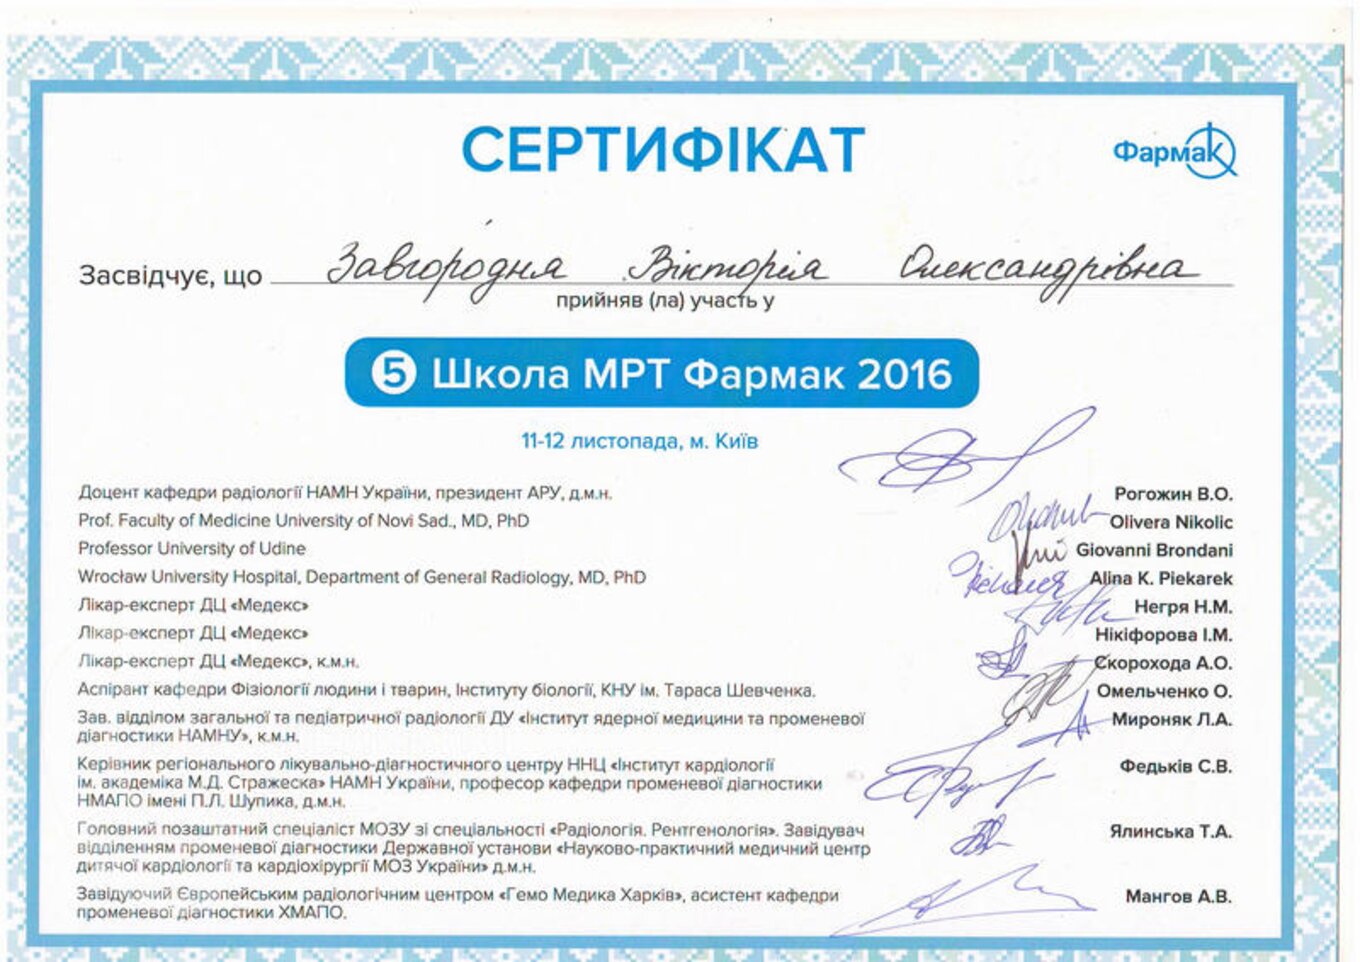 certificates/zavgorodnya-viktoriya-oleksandrivna/erc-zavgorodnyaja-certificates-02.jpg